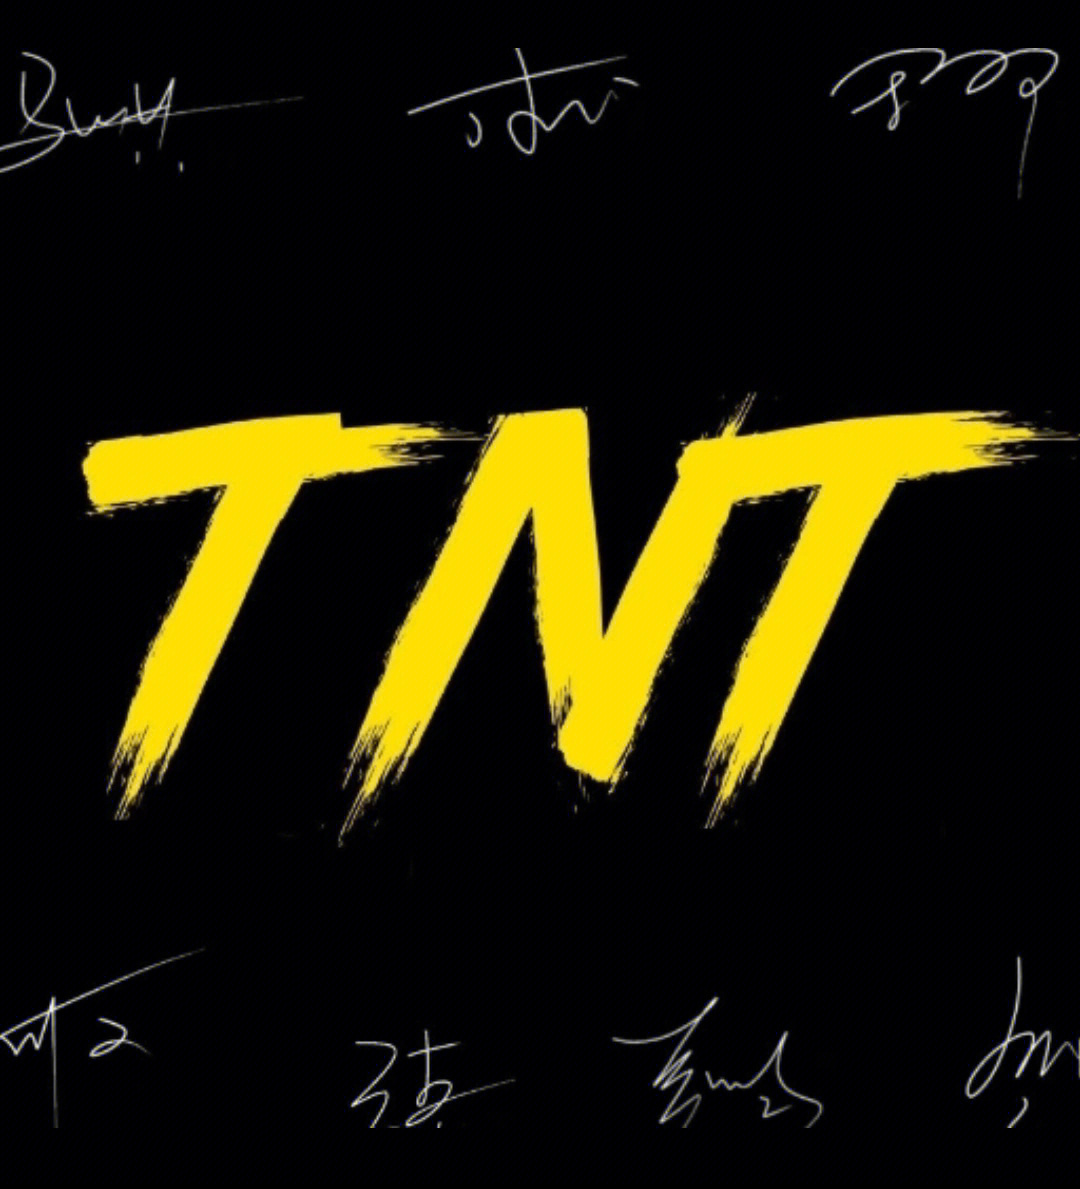 TNT团体标志图片